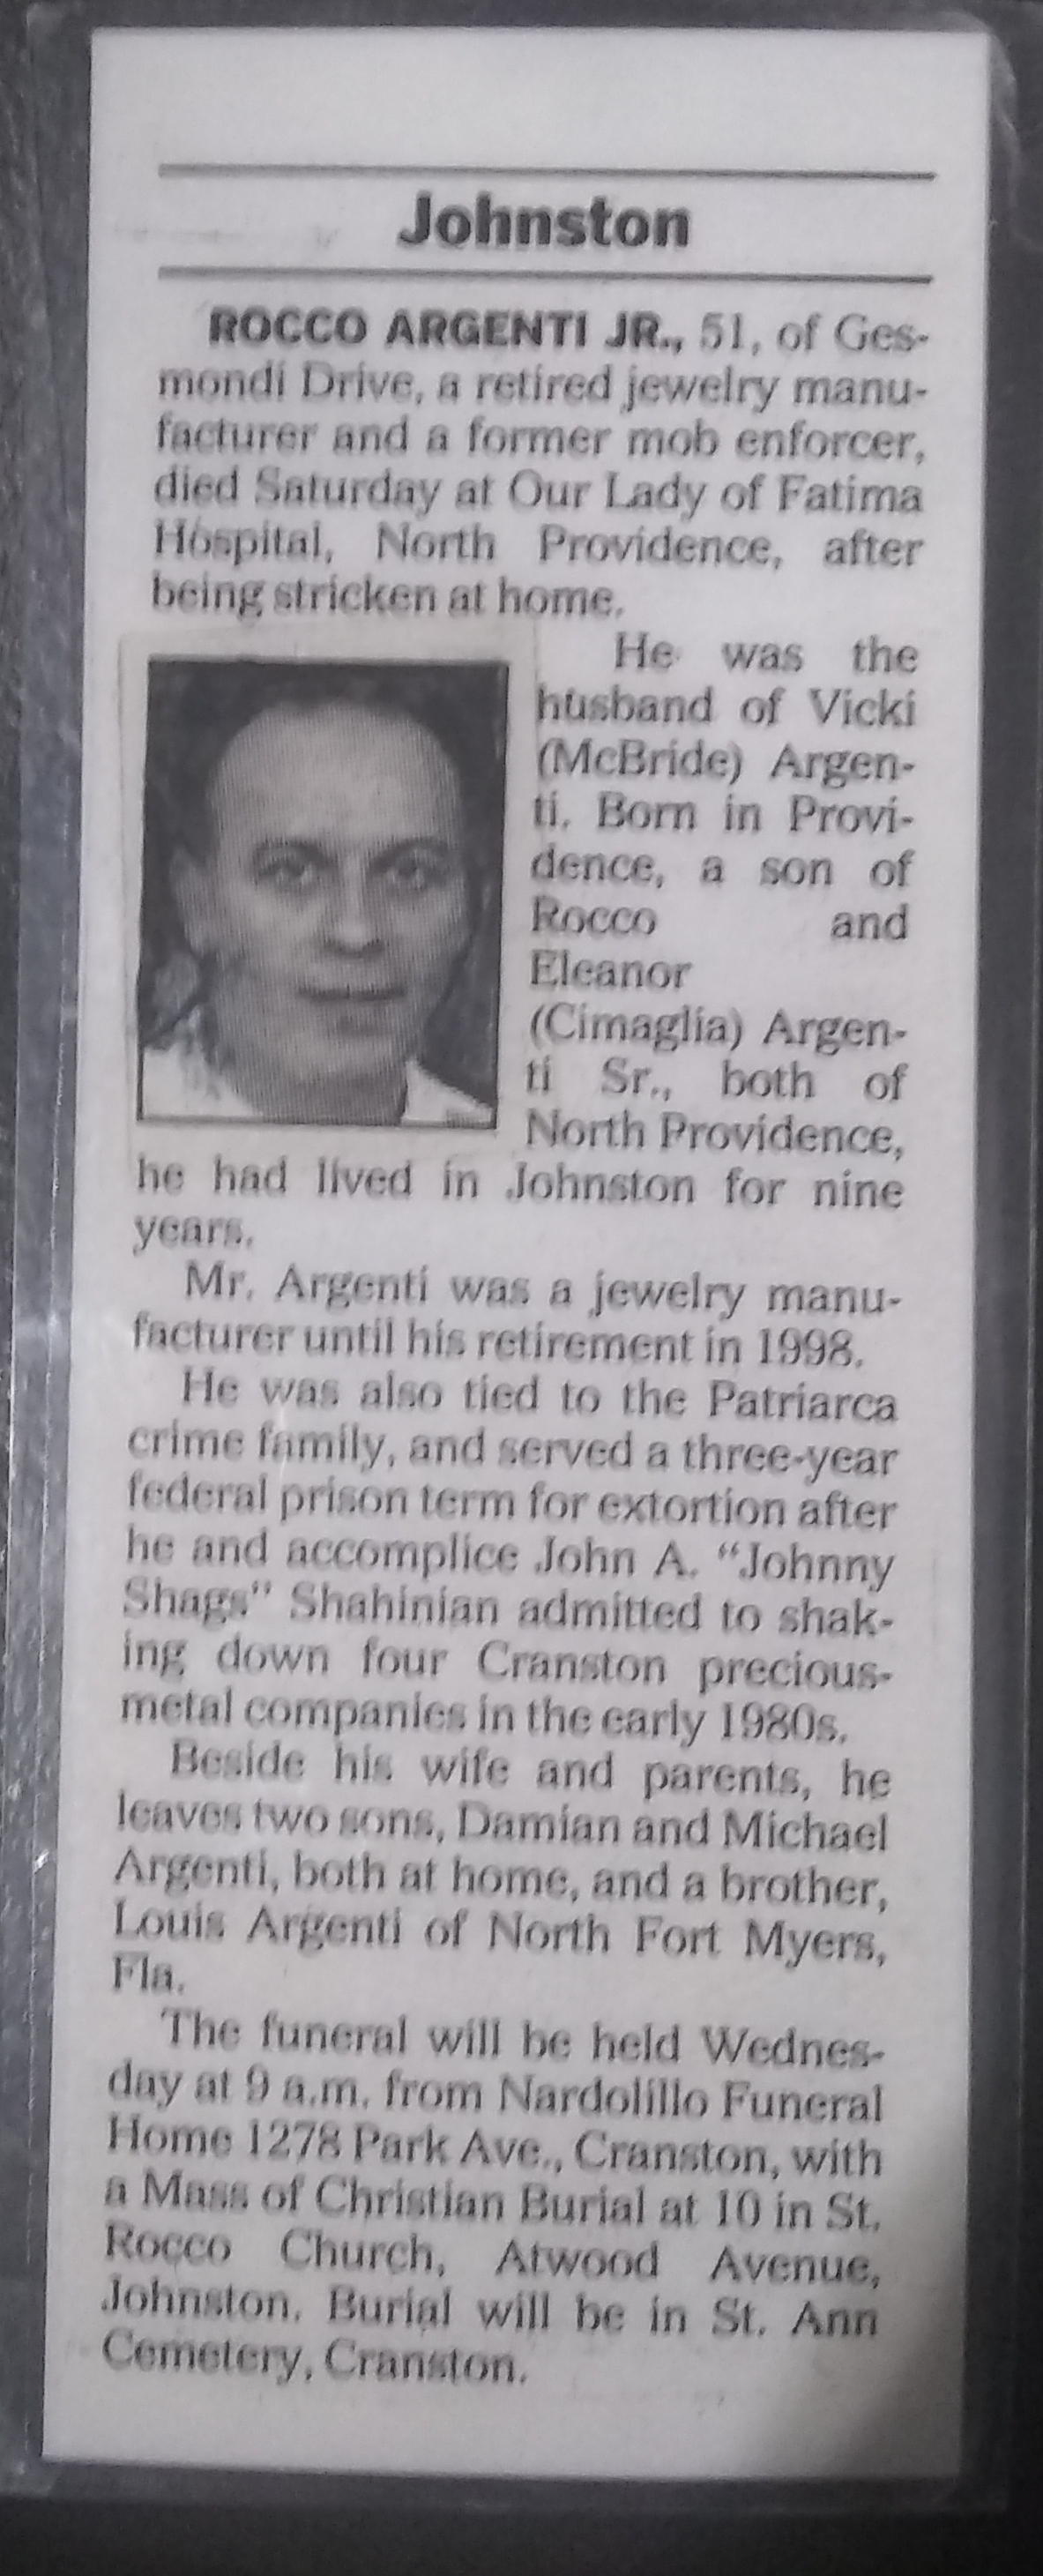 Rocco Argenti Jr. Obituary